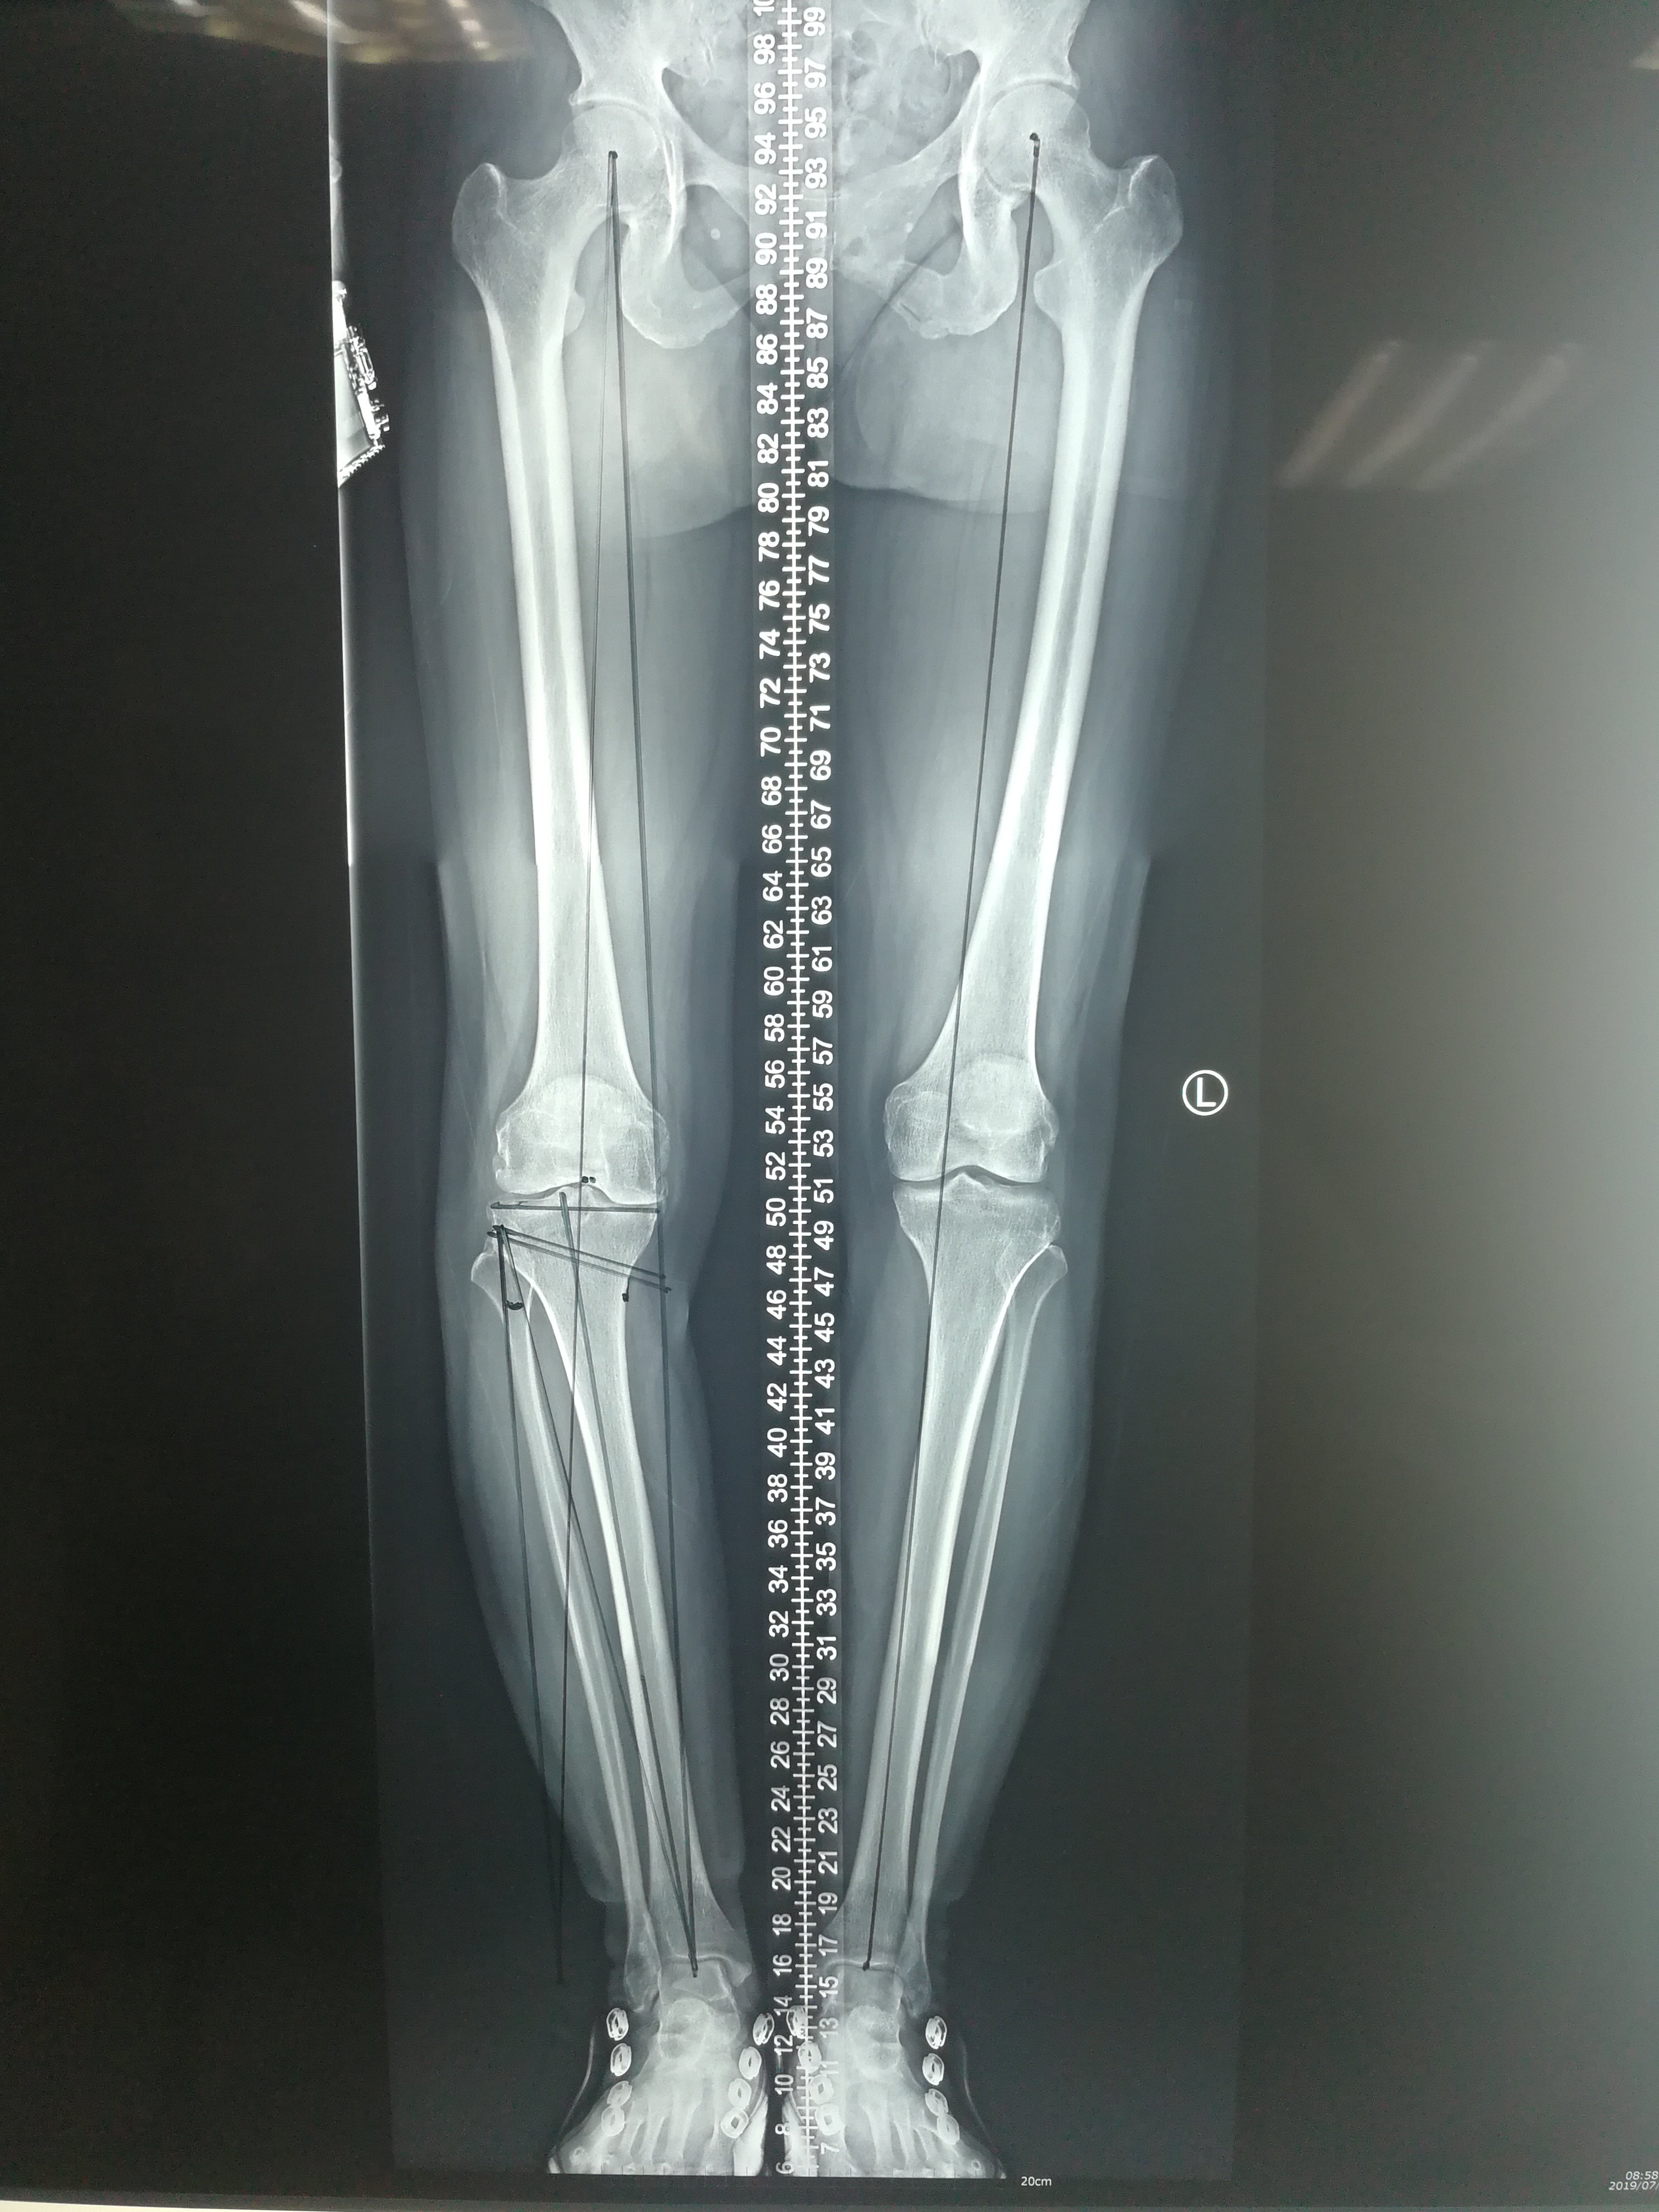 术前双下肢全长位片提示右膝关节轻度内翻畸形,内侧关节间隙变窄,术前